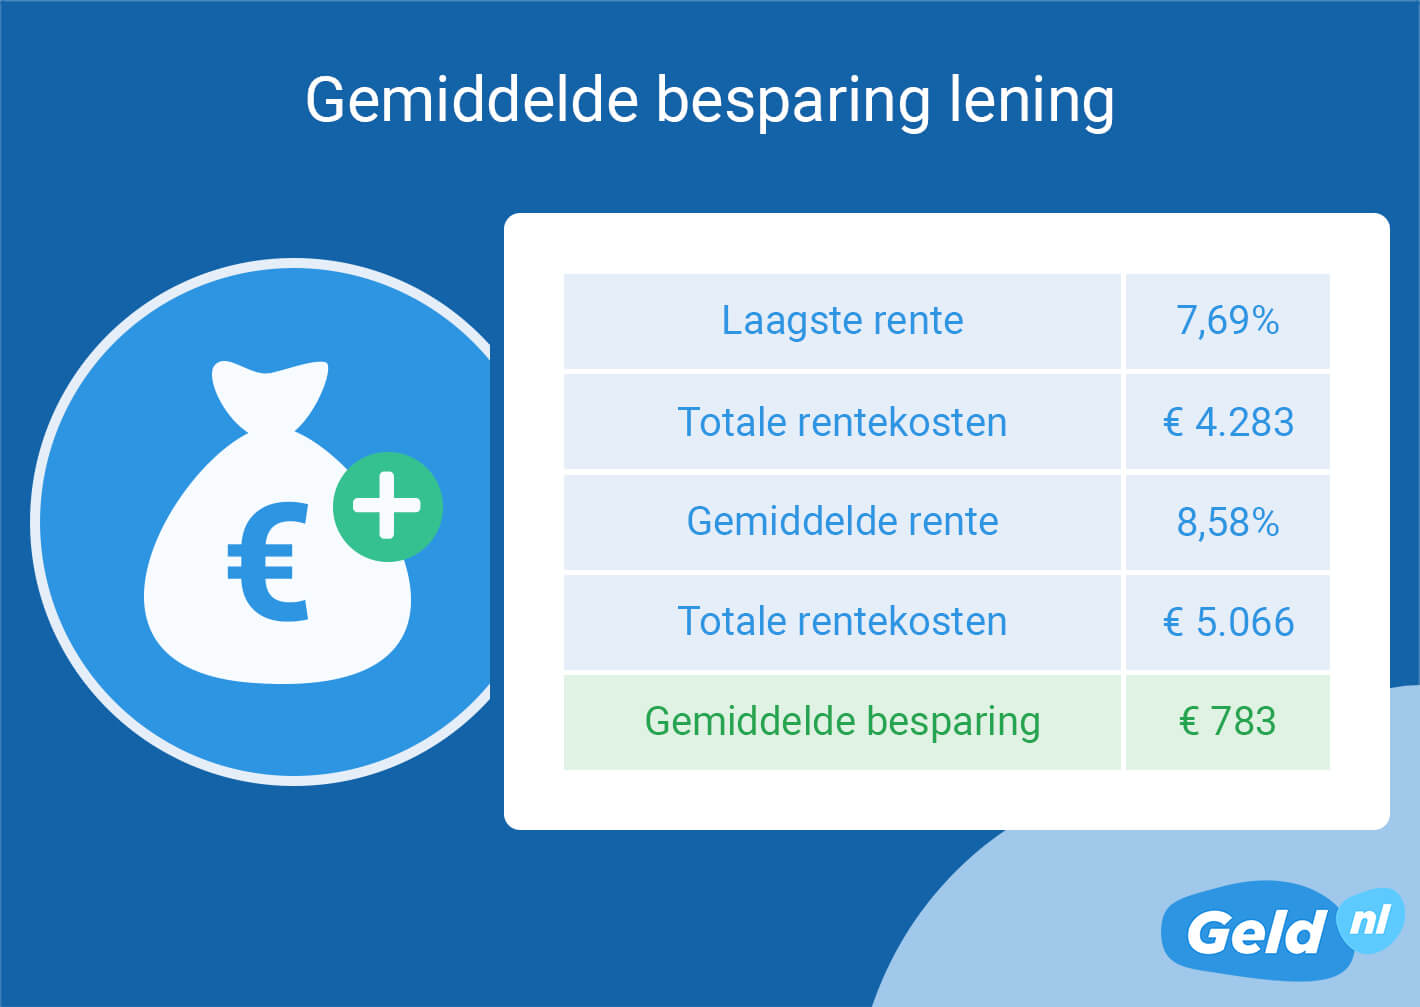 Gemiddelde besparing op lening in 2023